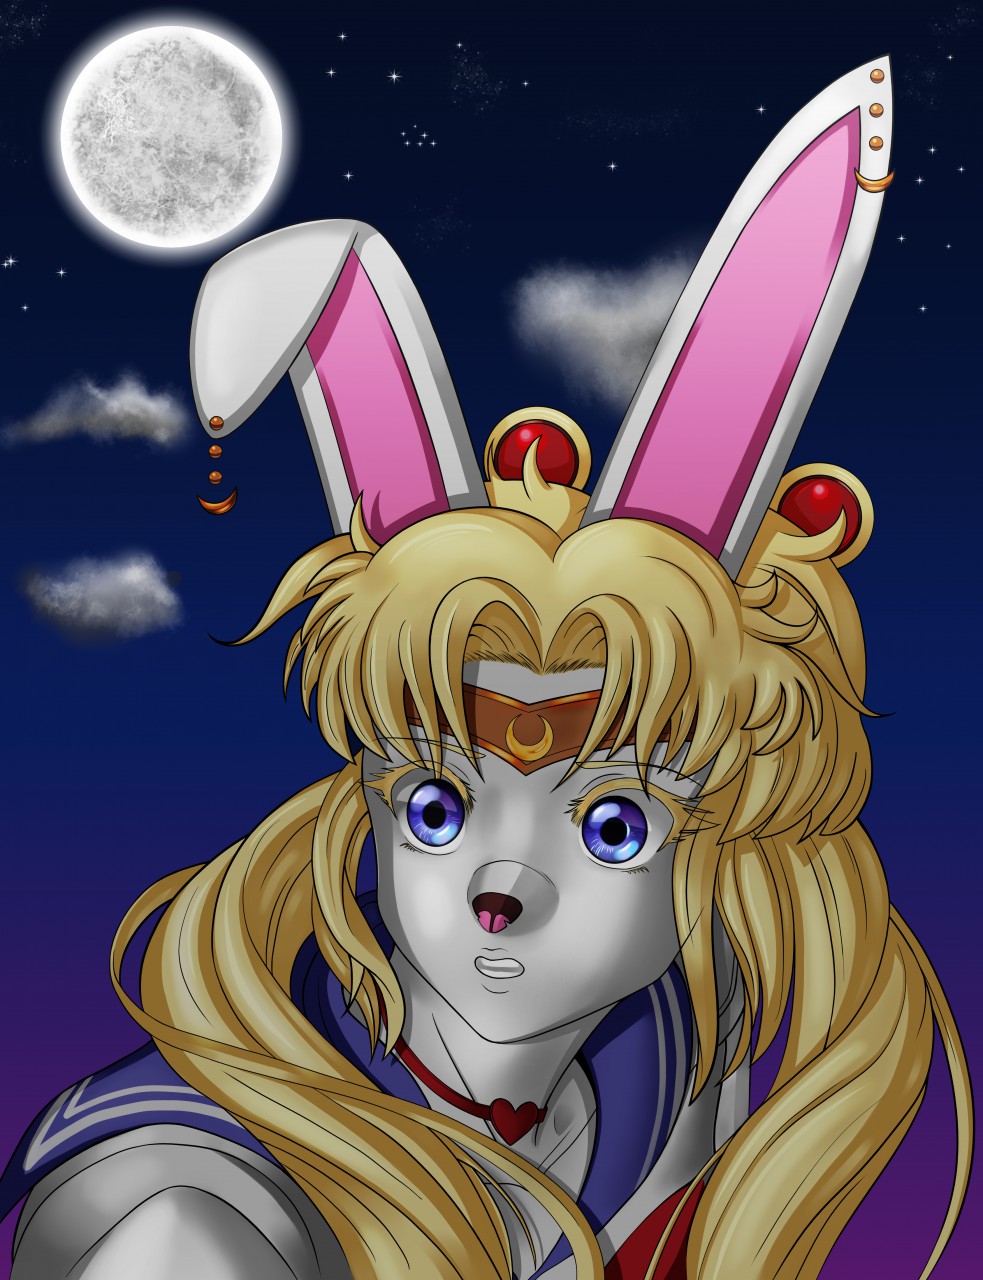 Art of Sailor Moon